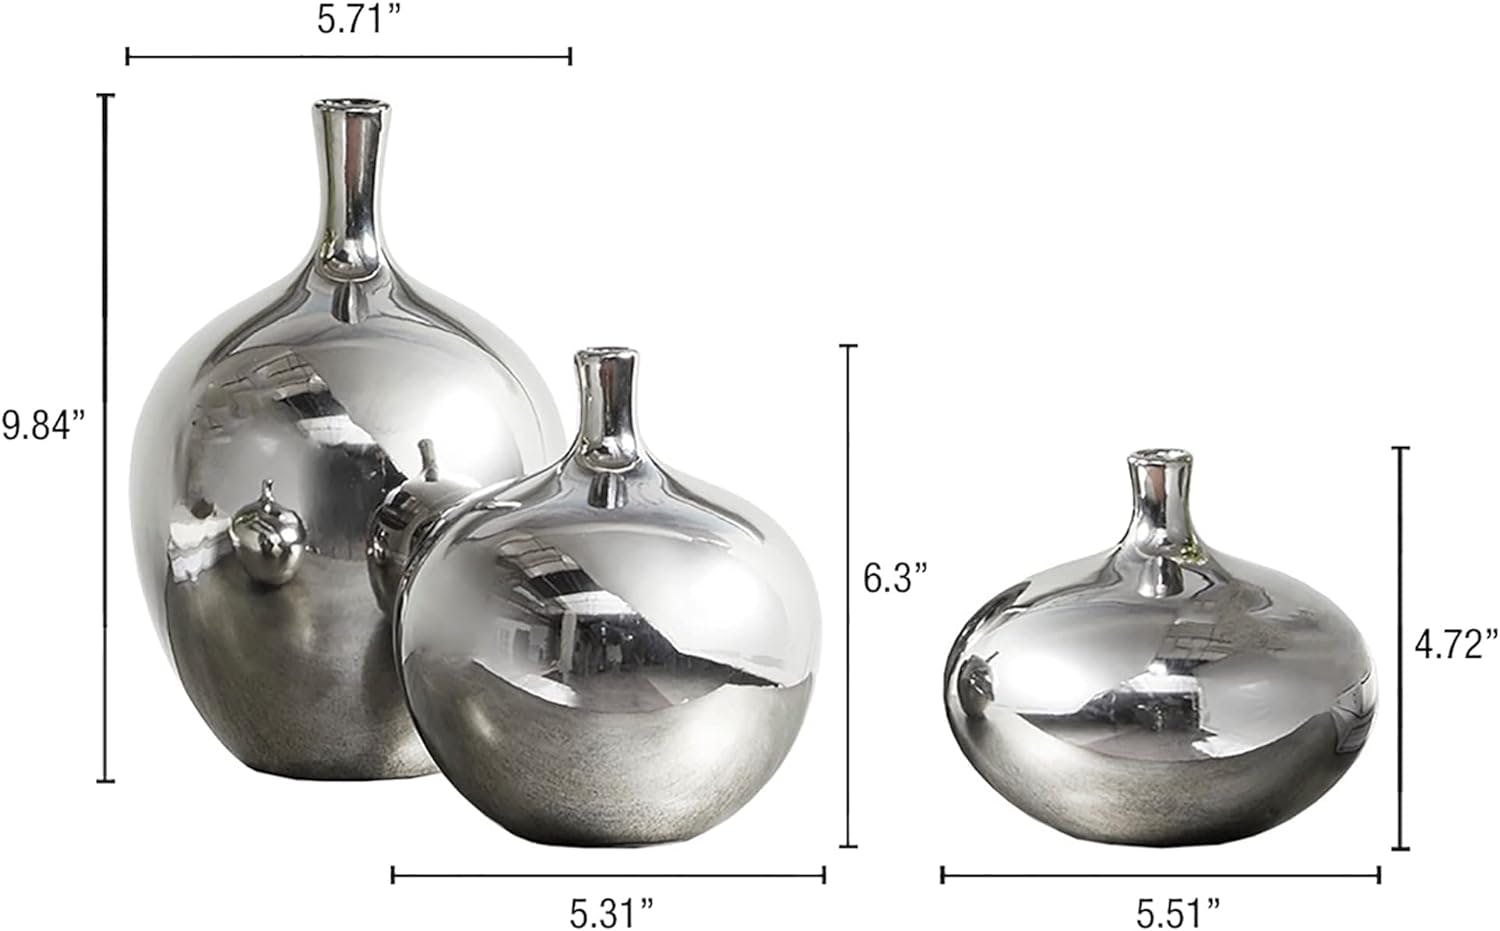 Ansen Elegant Silver Ceramic Bouquet Vase Trio